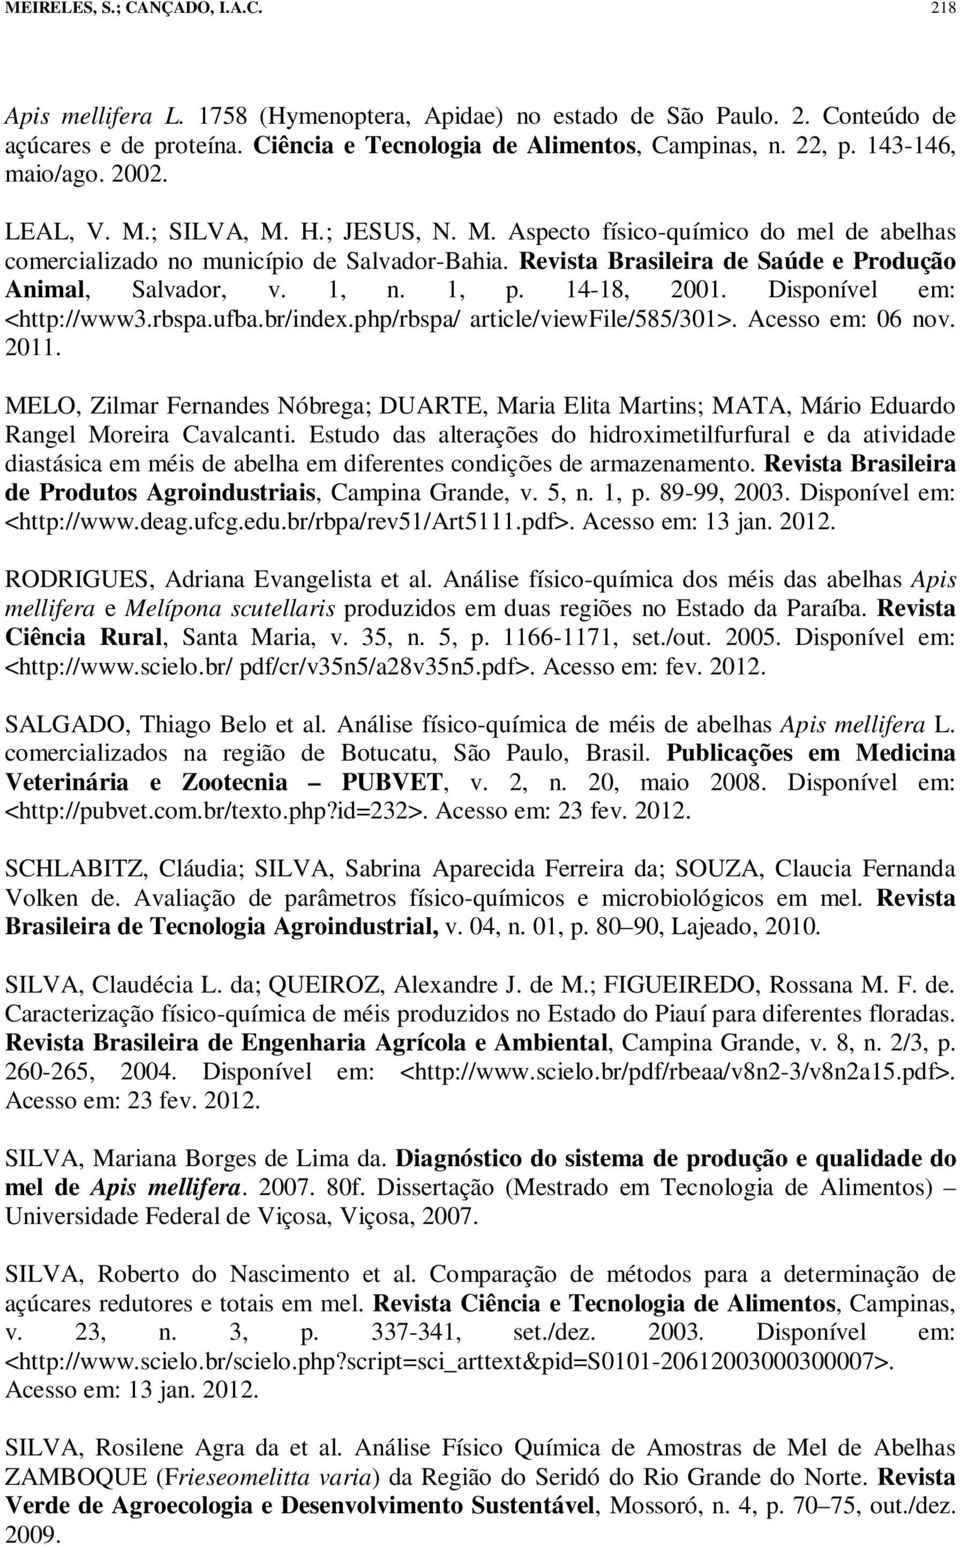 Revista Brasileira de Saúde e Produção Animal, Salvador, v. 1, n. 1, p. 14-18, 2001. Disponível em: <http://www3.rbspa.ufba.br/index.php/rbspa/ article/viewfile/585/301>. Acesso em: 06 nov. 2011.